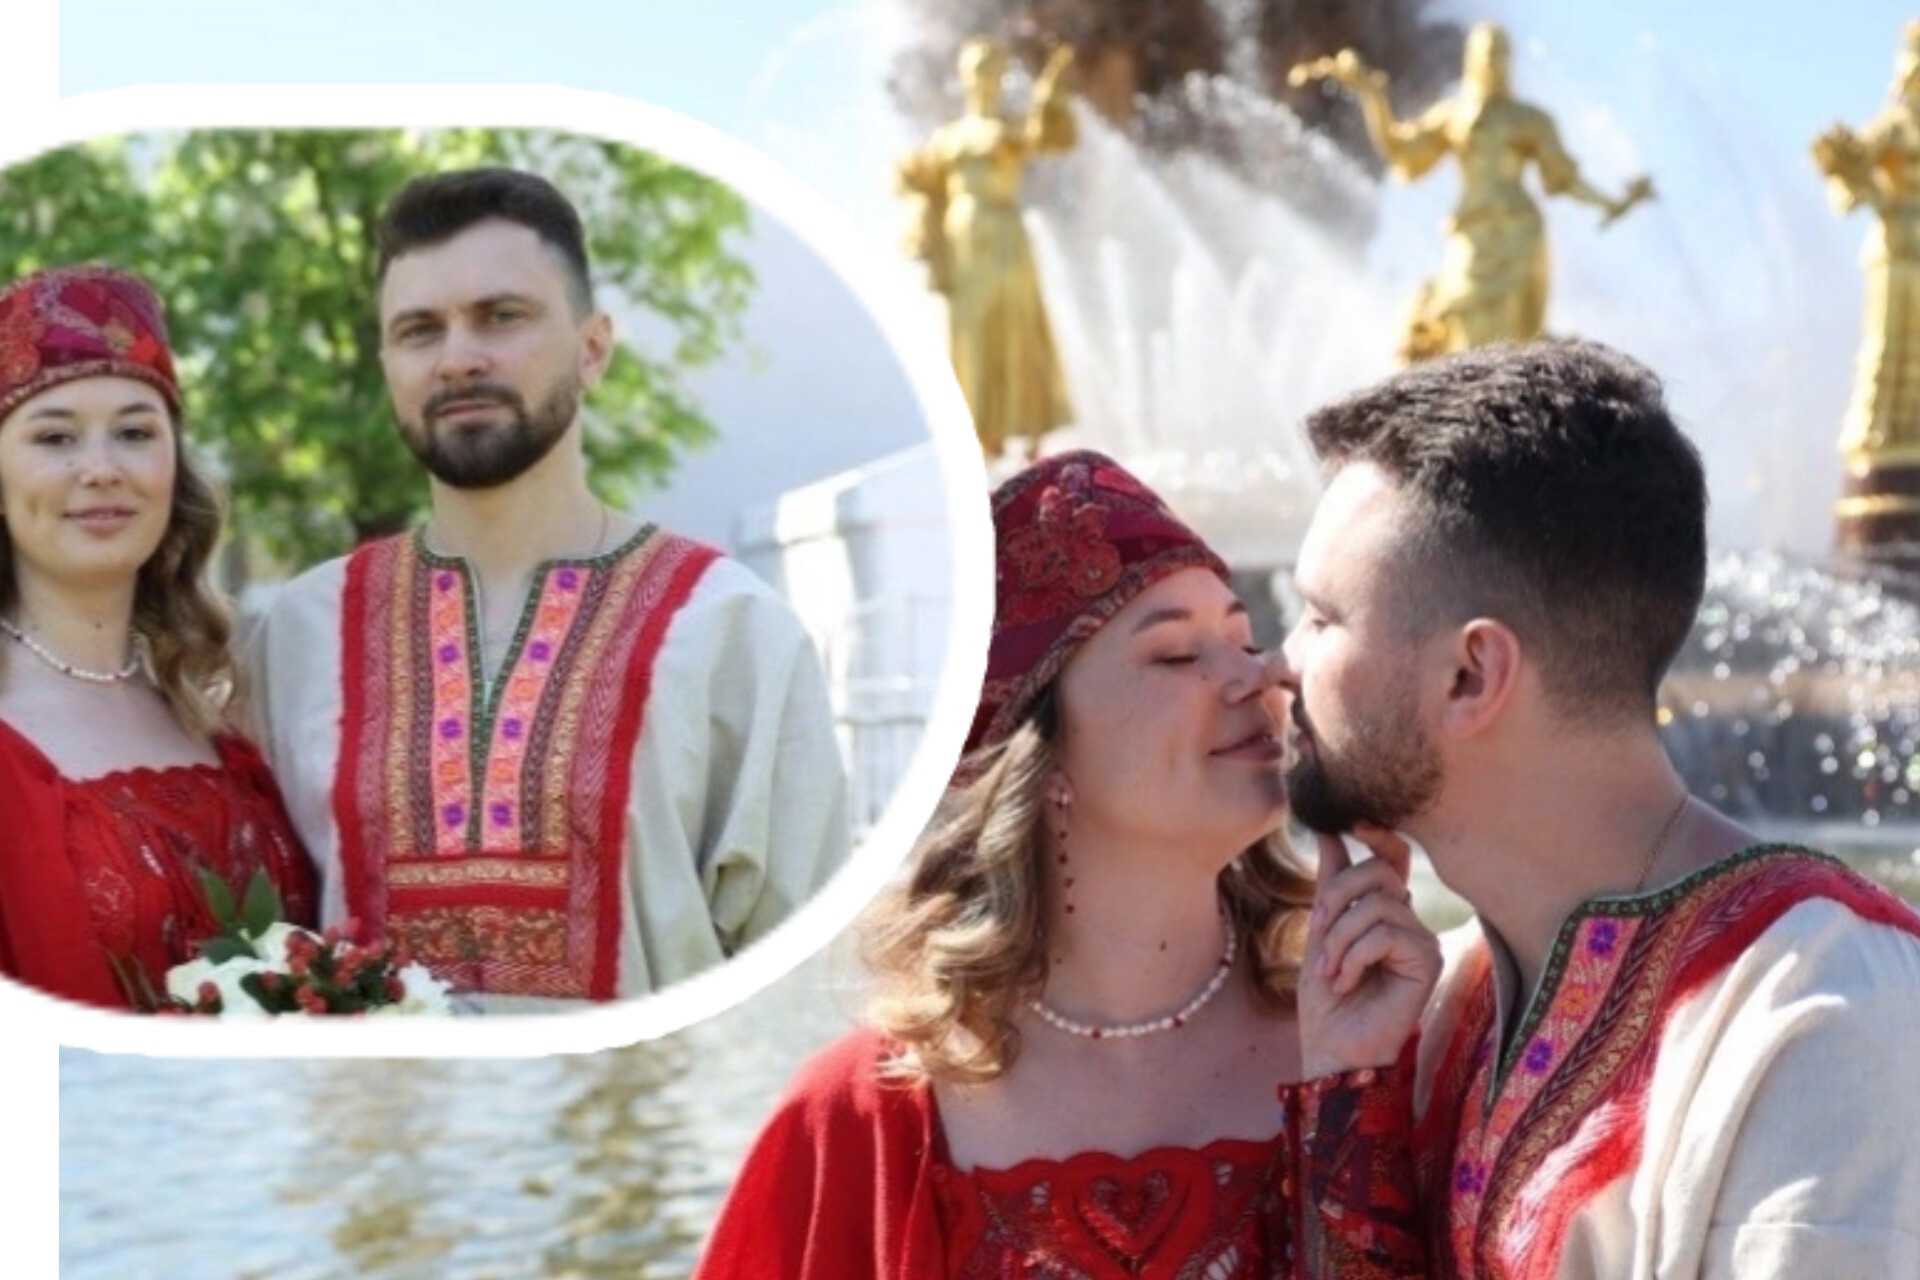  Ярославцы поженились в сказочных костюмах в Москве 